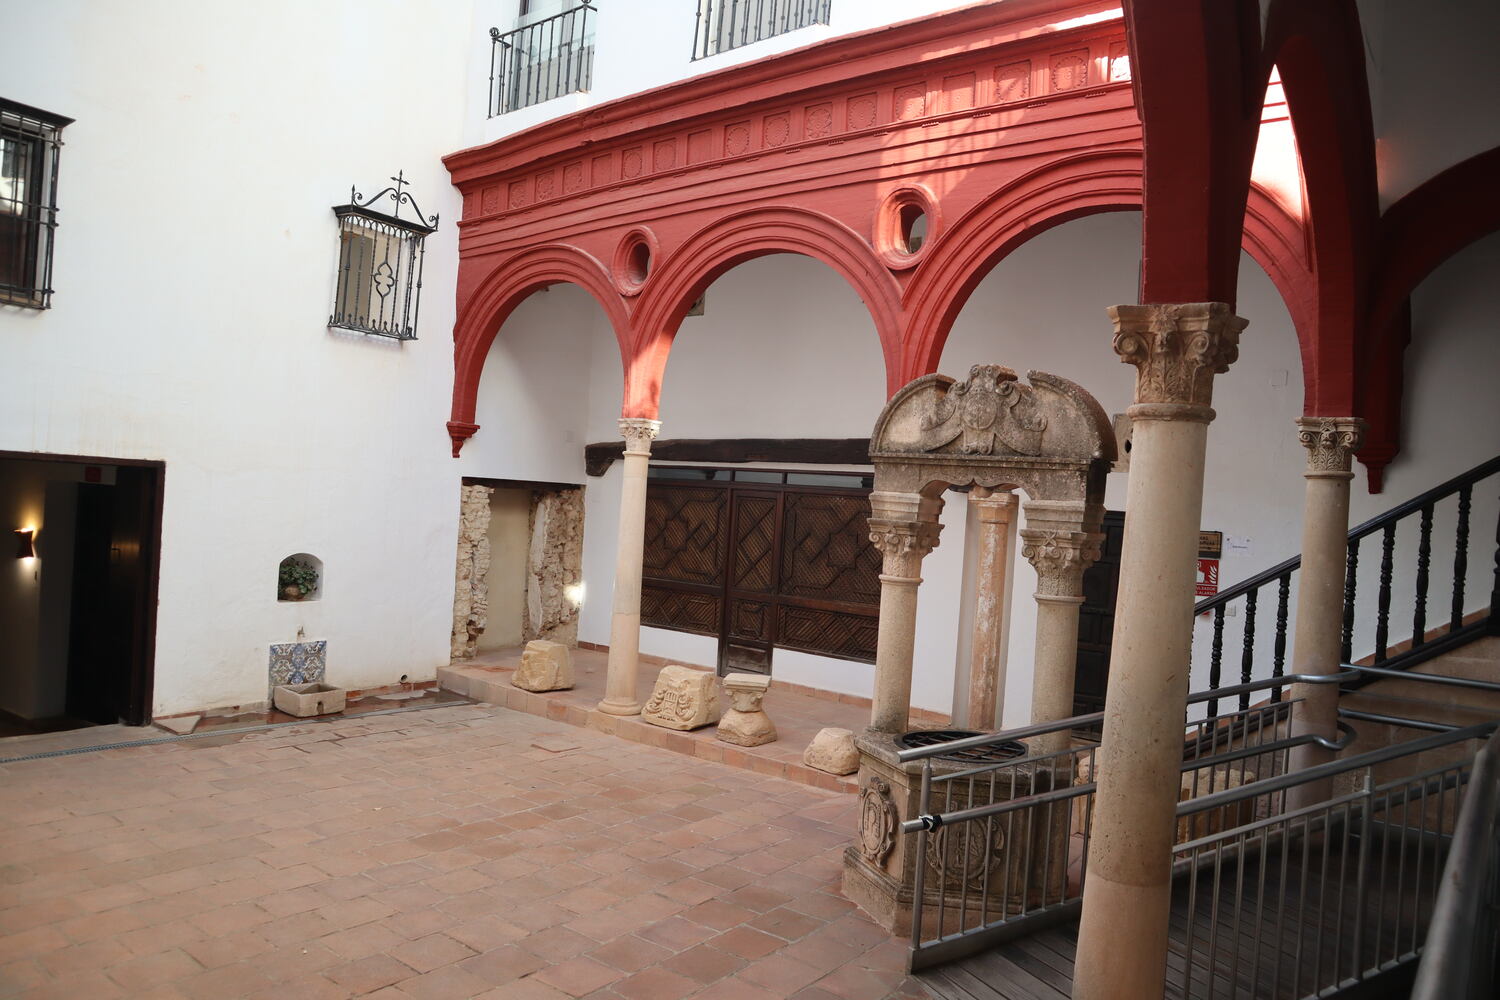 First courtyard stop at the Palacio de Mondragon